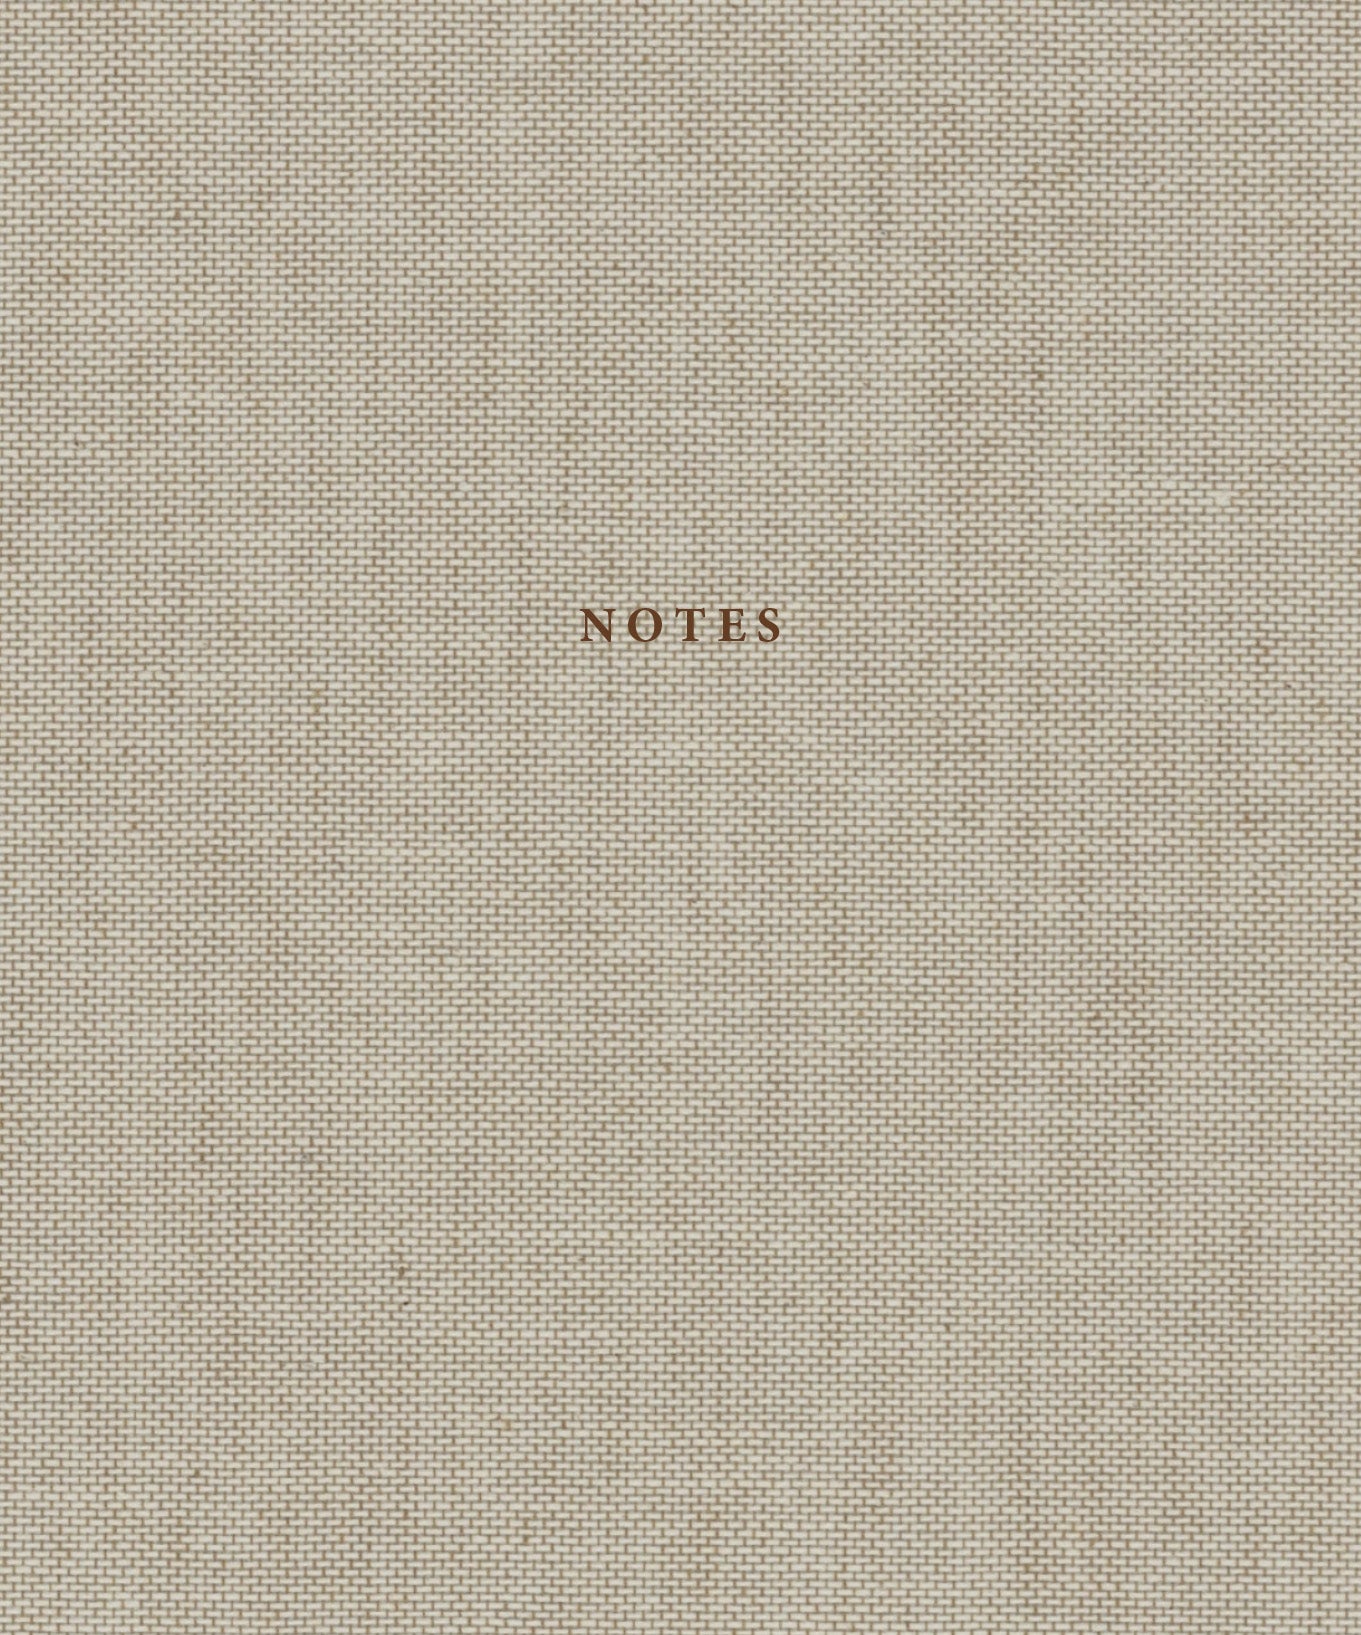 Natural Linen & Dark Brown Notebook